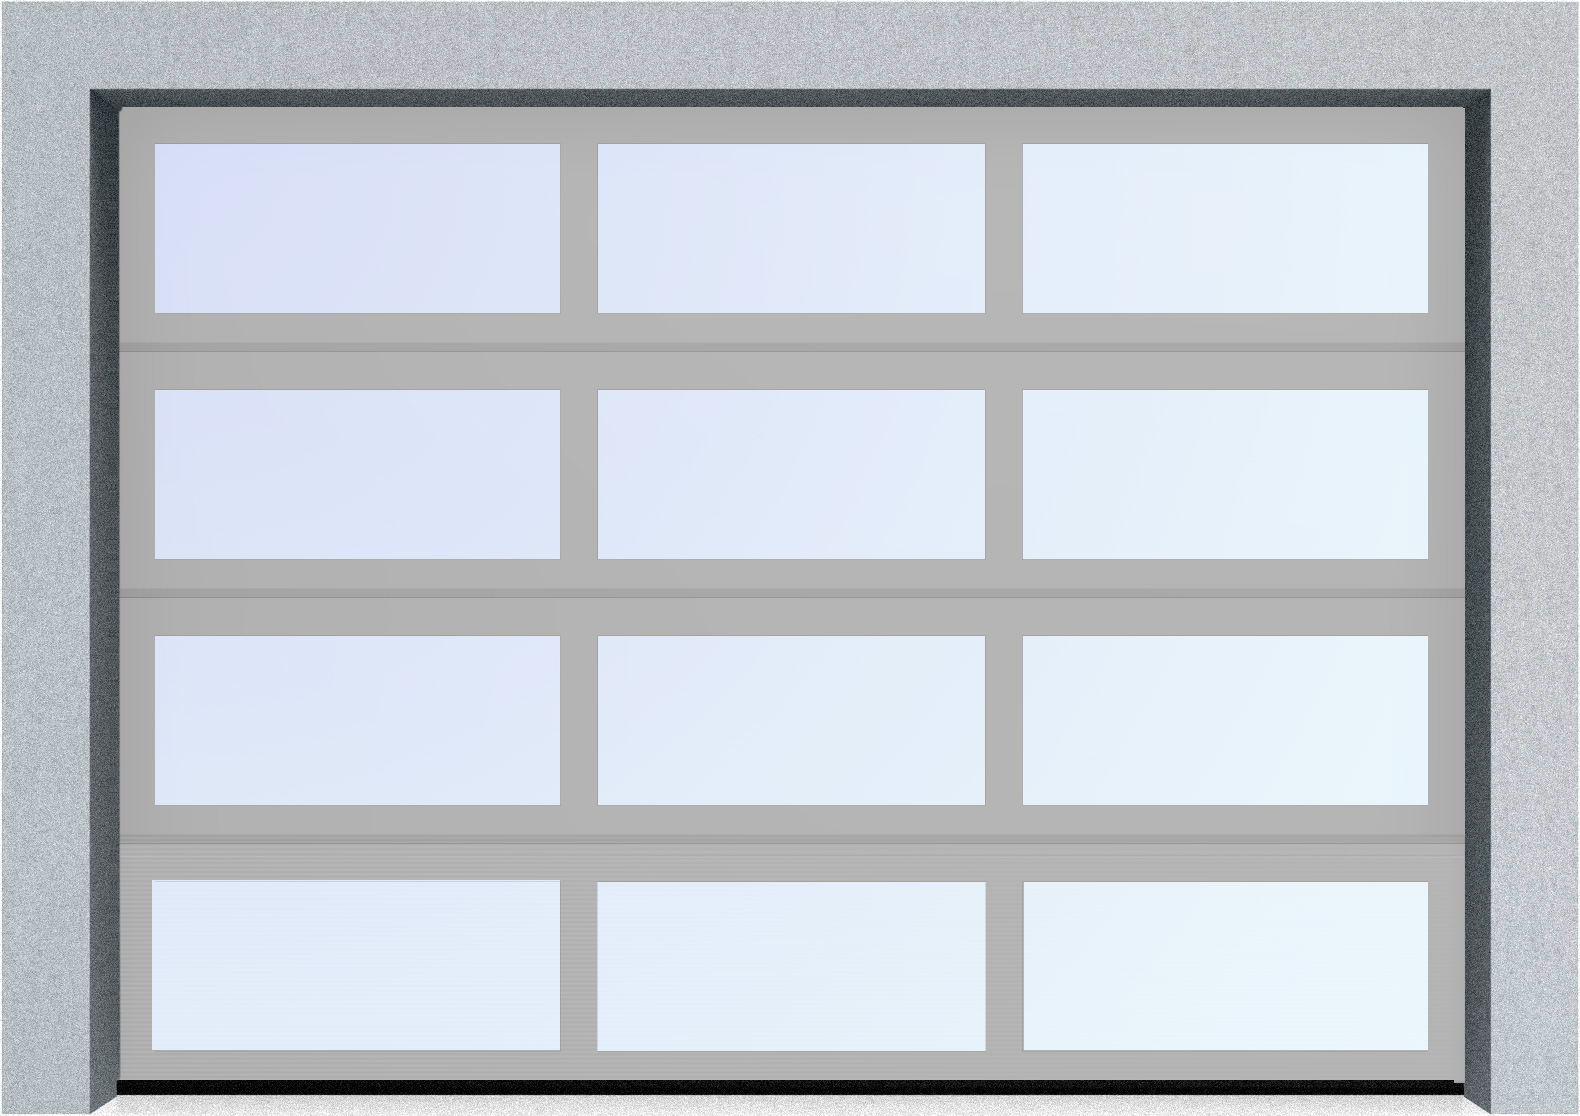  Автоматические секционные панорамные ворота серии AluTrend (АЛП) 3875х4500 стандартные цвета, фото 9 